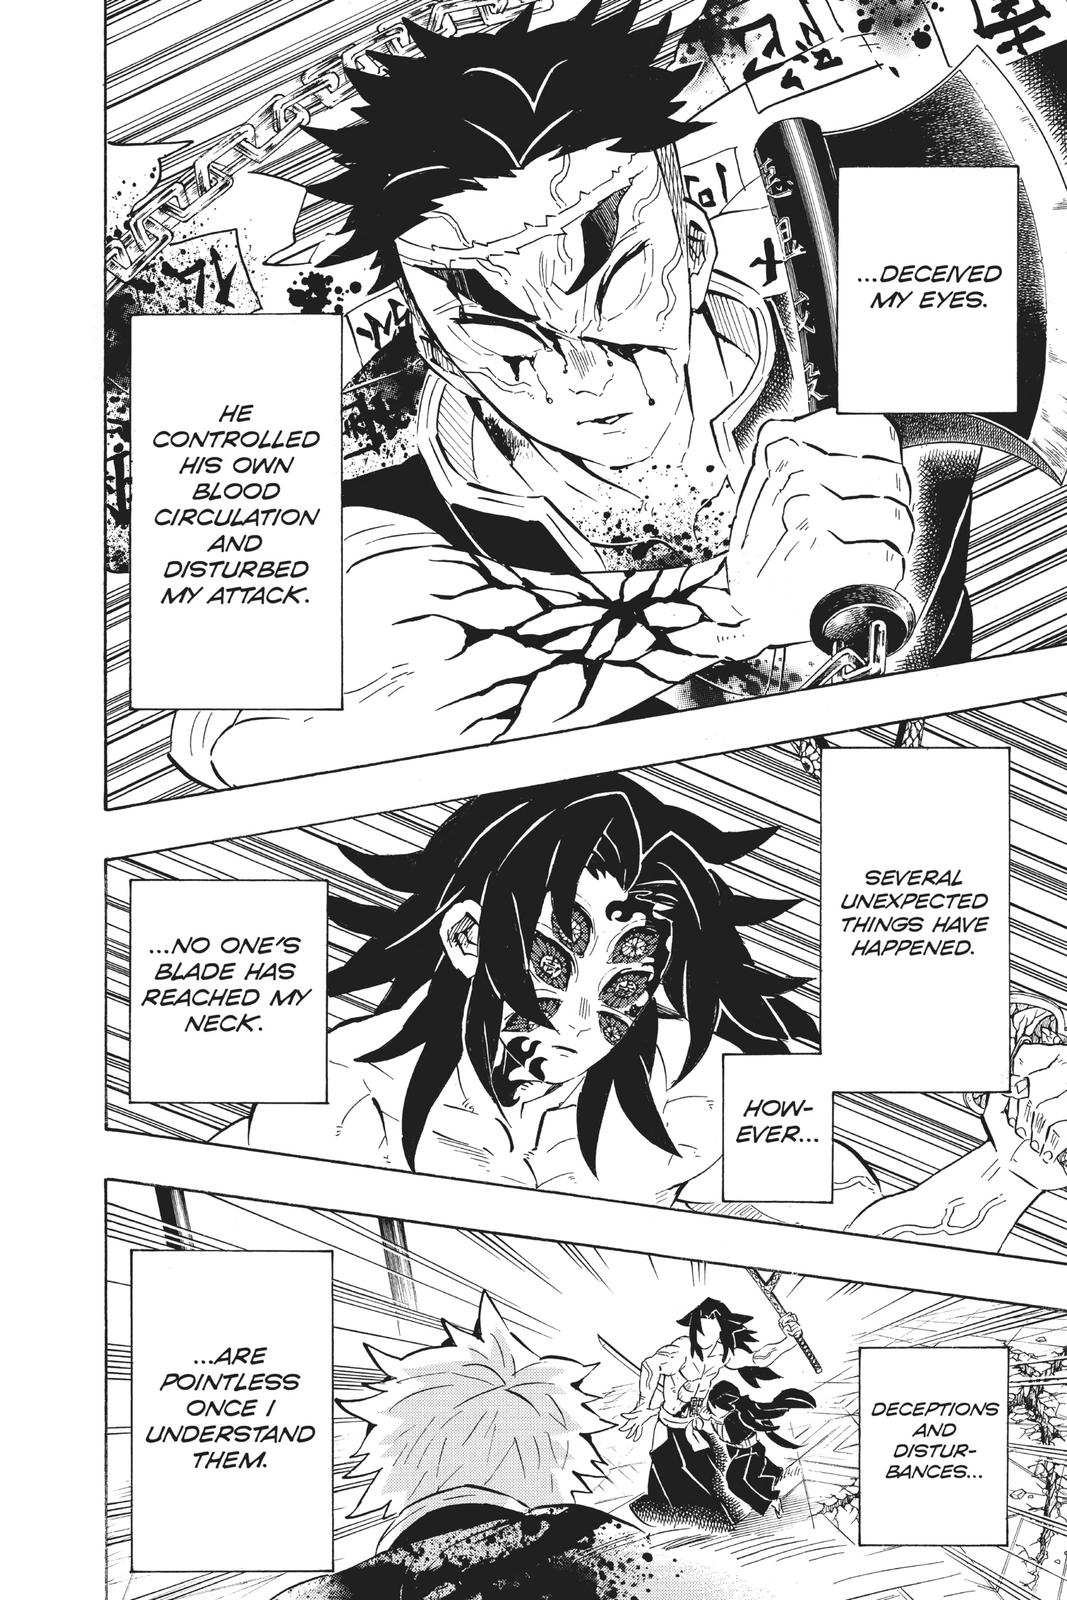 Demon Slayer Manga Manga Chapter - 173 - image 7